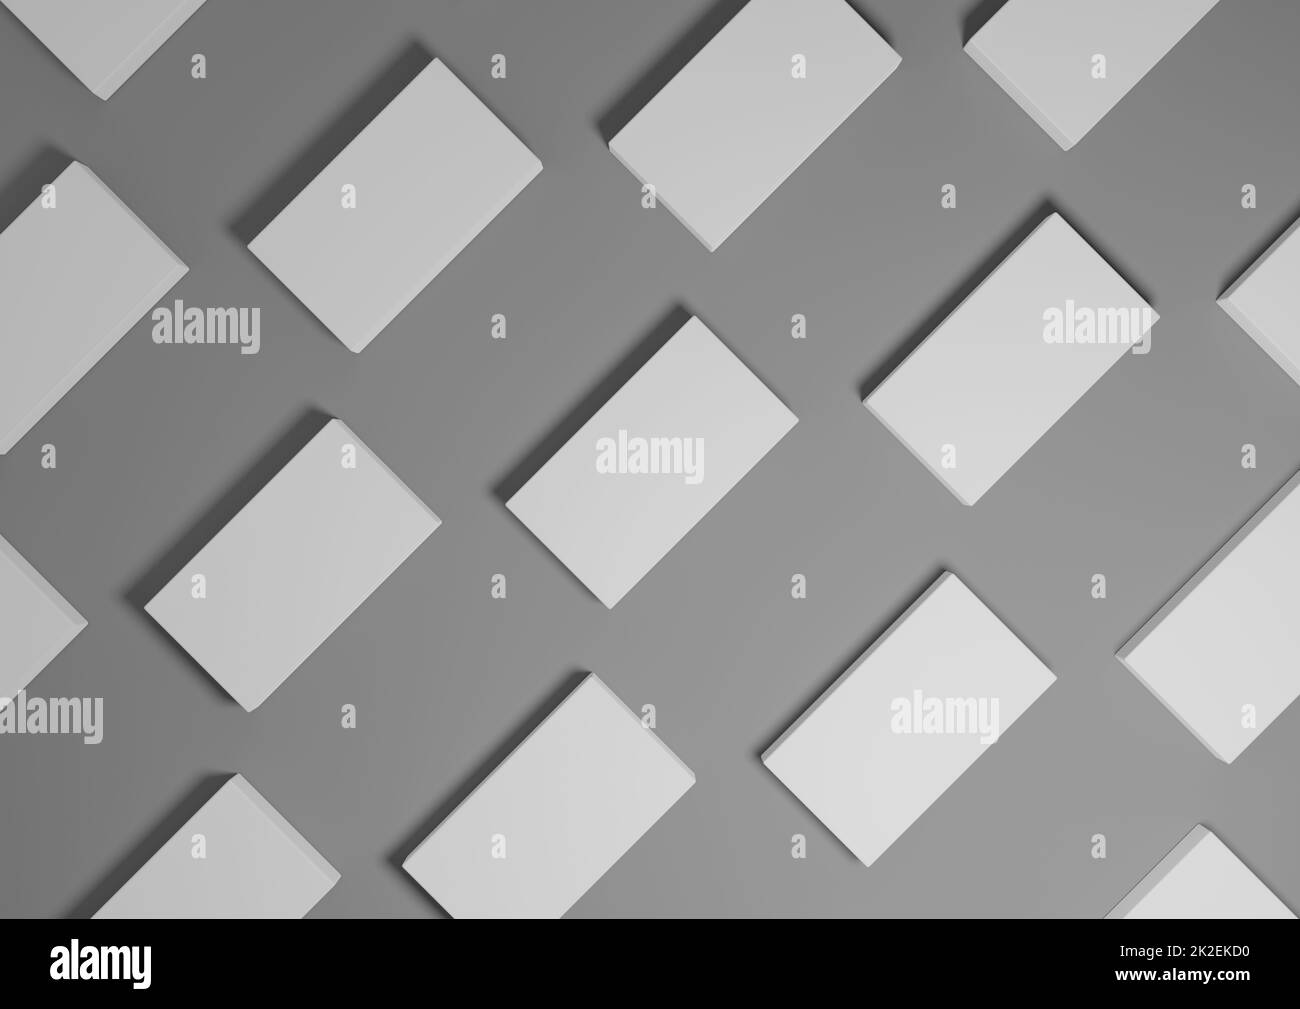 Grigio grafite scuro, bianco e nero, rendering 3D visualizzazione dall'alto minima, semplice e moderna visualizzazione piatta del prodotto da sopra lo sfondo con supporti quadrati ripetitivi in un motivo Foto Stock